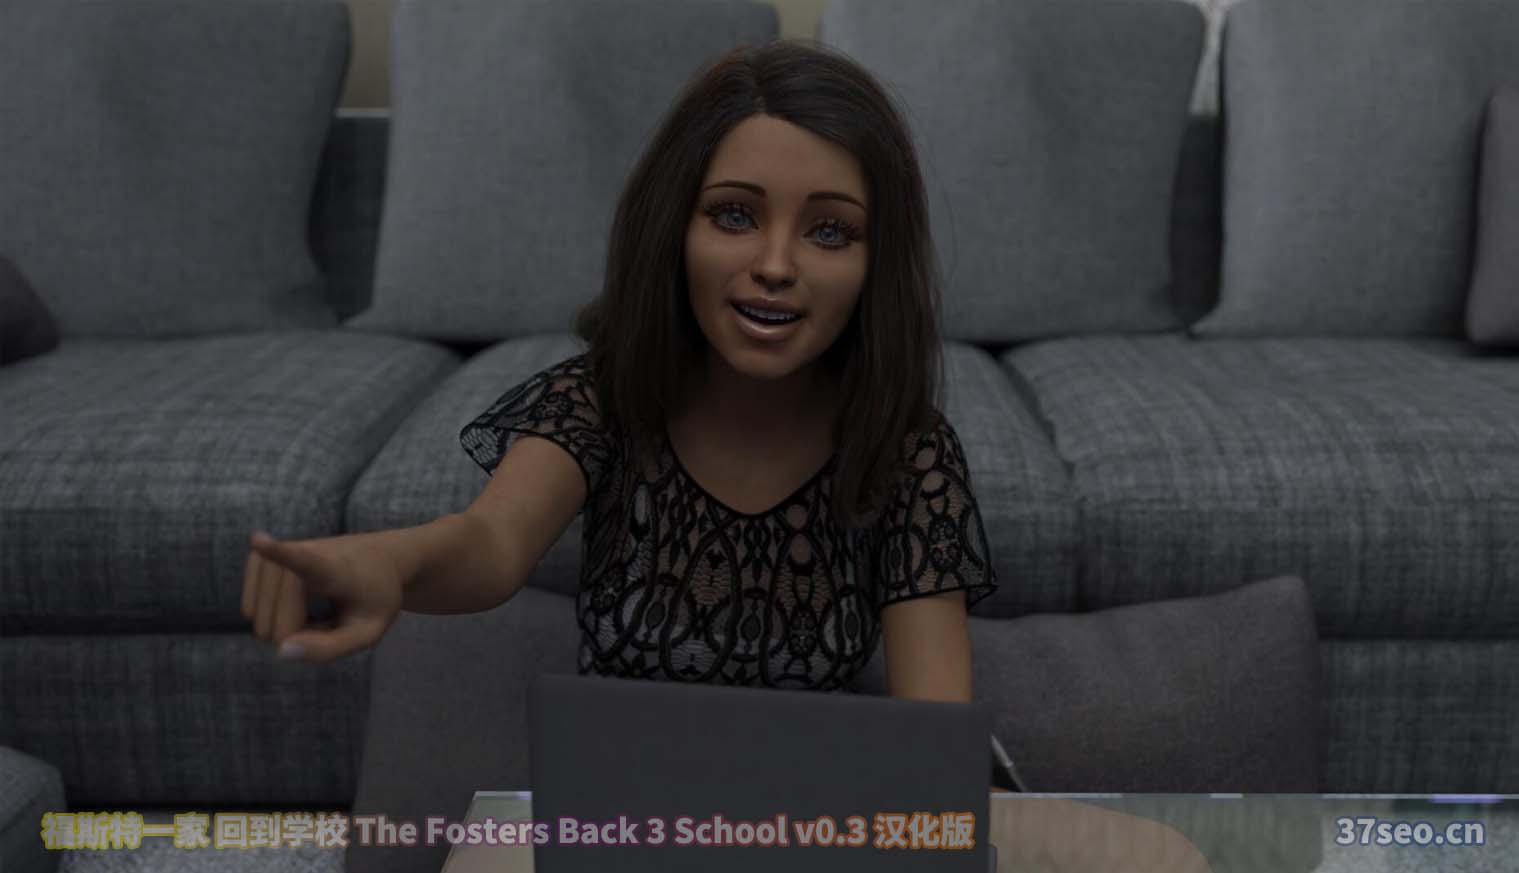 福斯特一家 回到学校 The Fosters Back 3 School v0.3 PC+安卓汉化版[百度云]